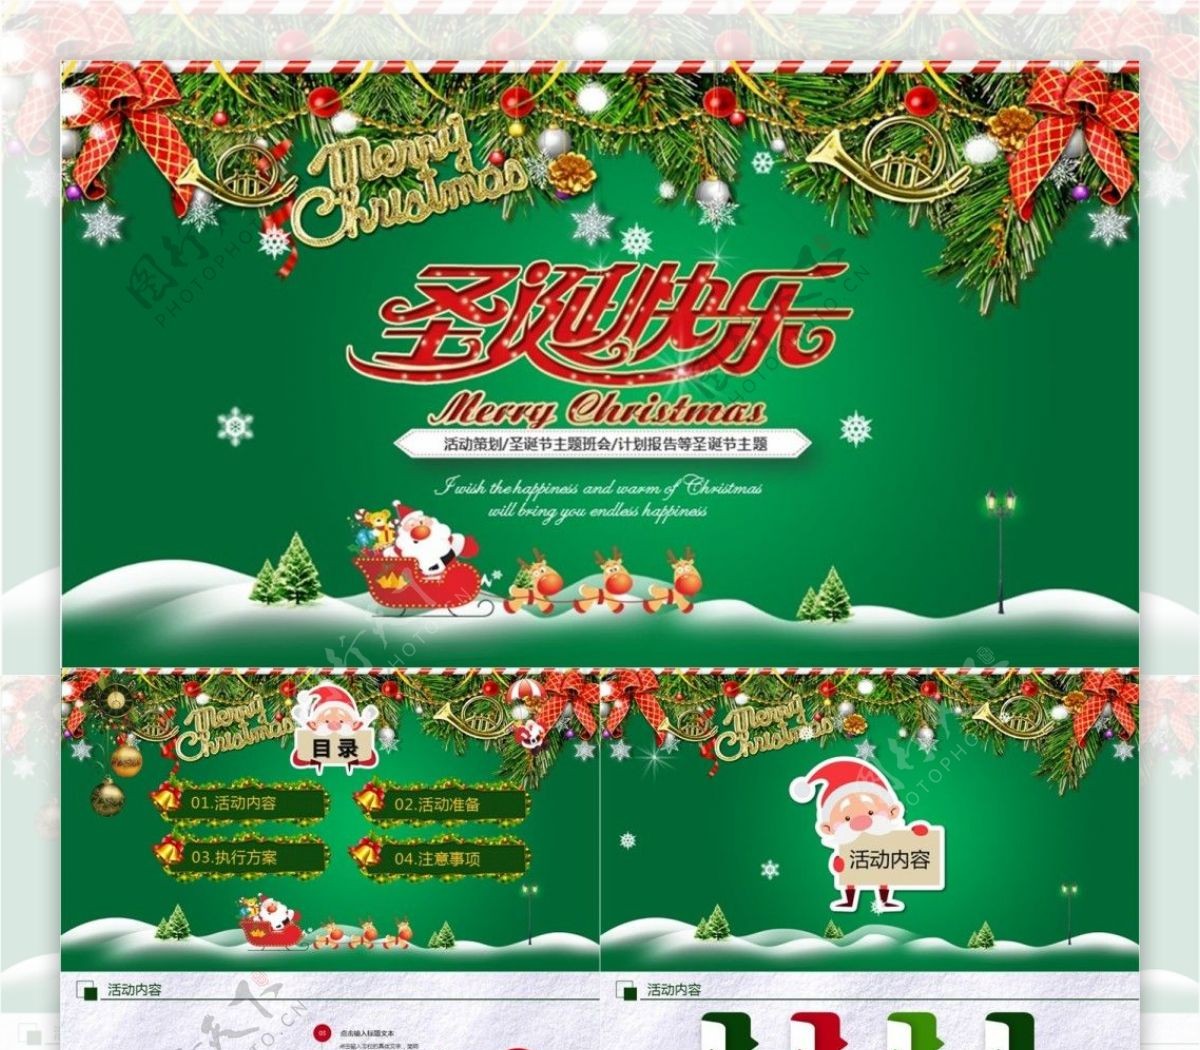 欢乐圣诞节节日营销活动策划PPT模板